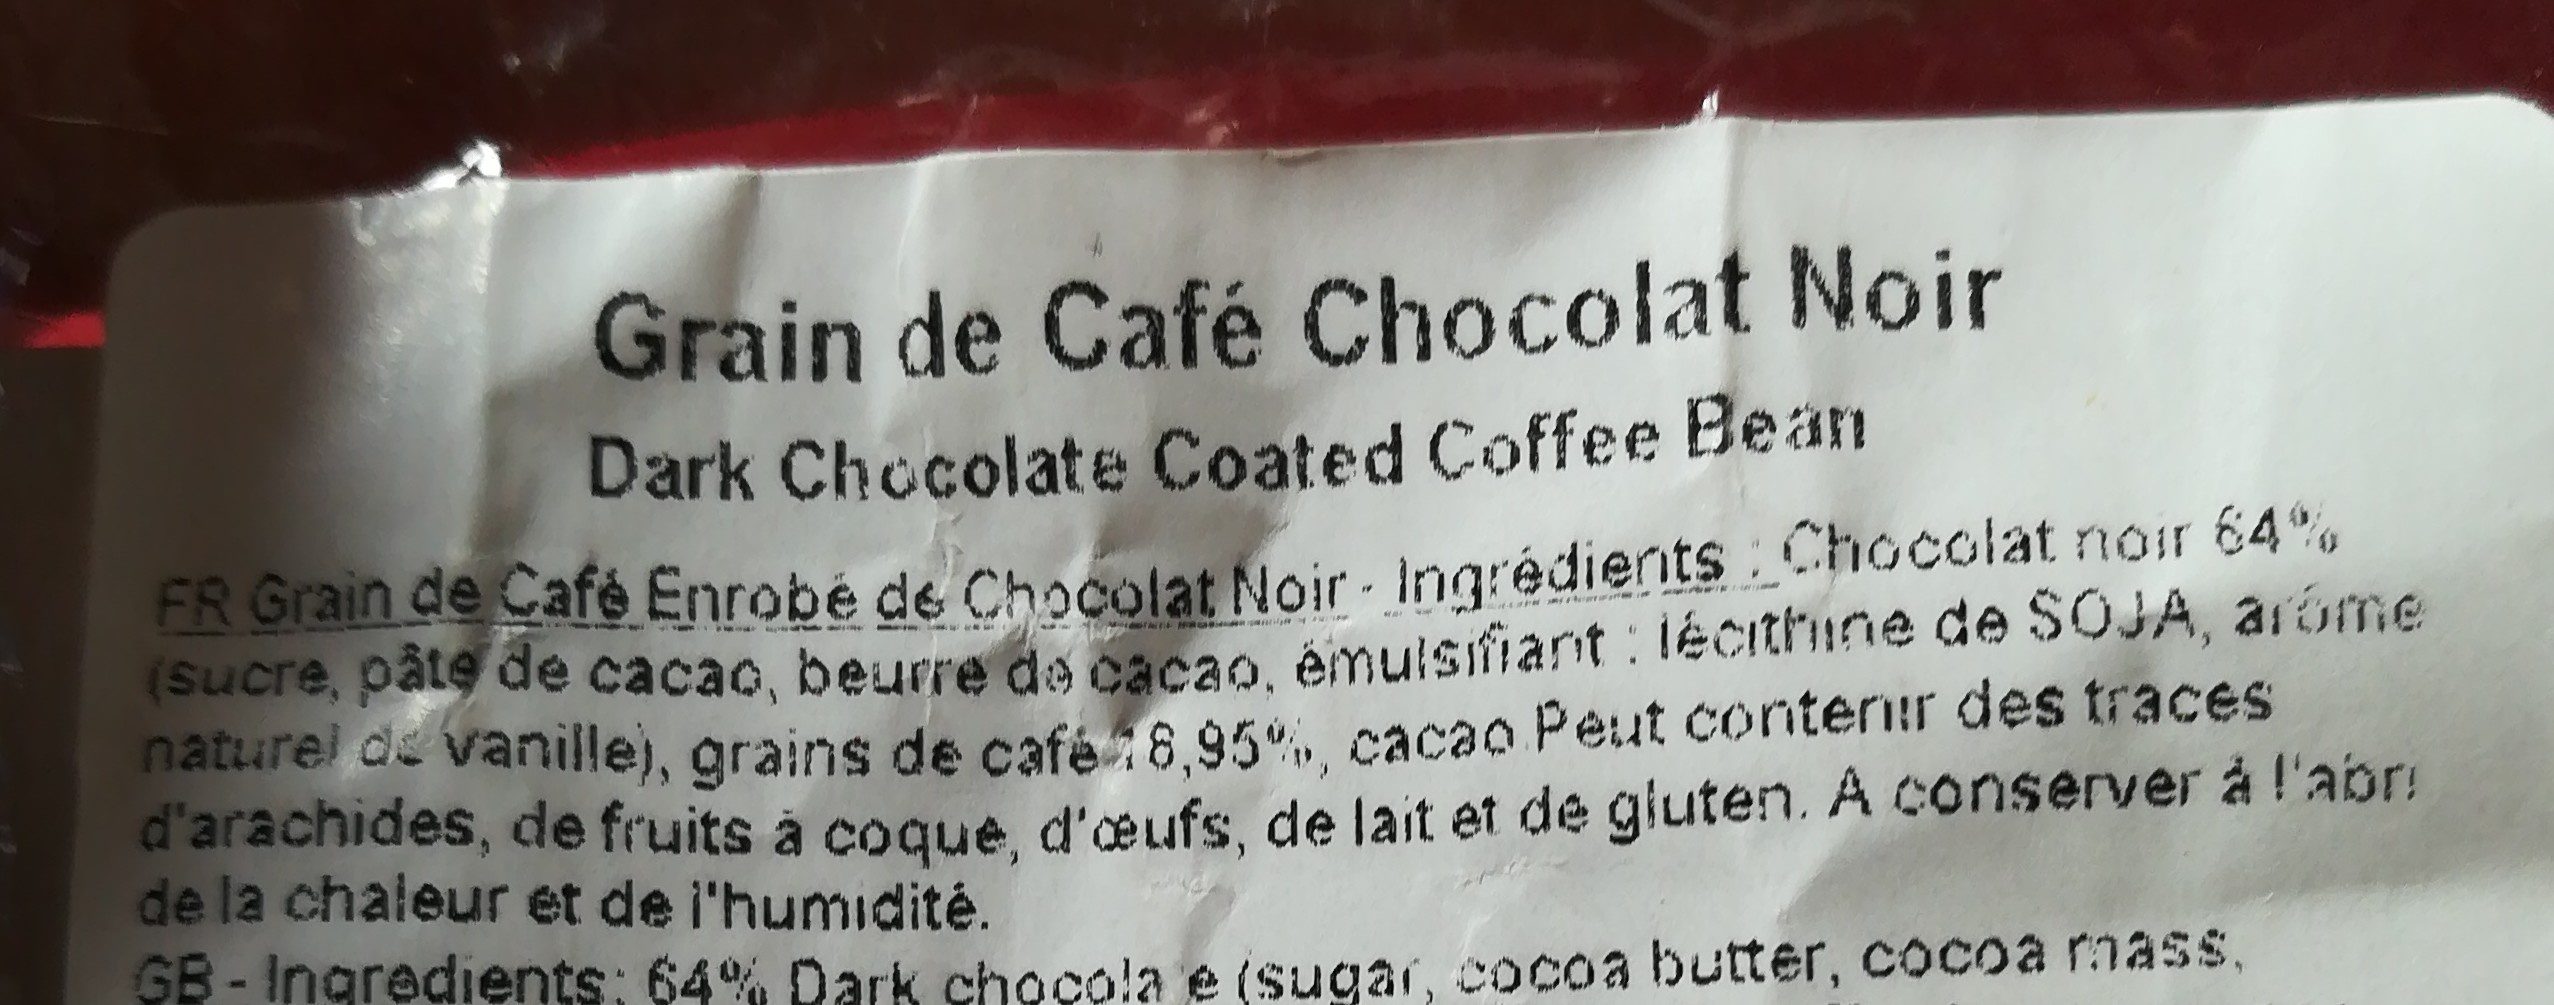 Grains de café enrobé de chocolat noir - Ingredients - fr